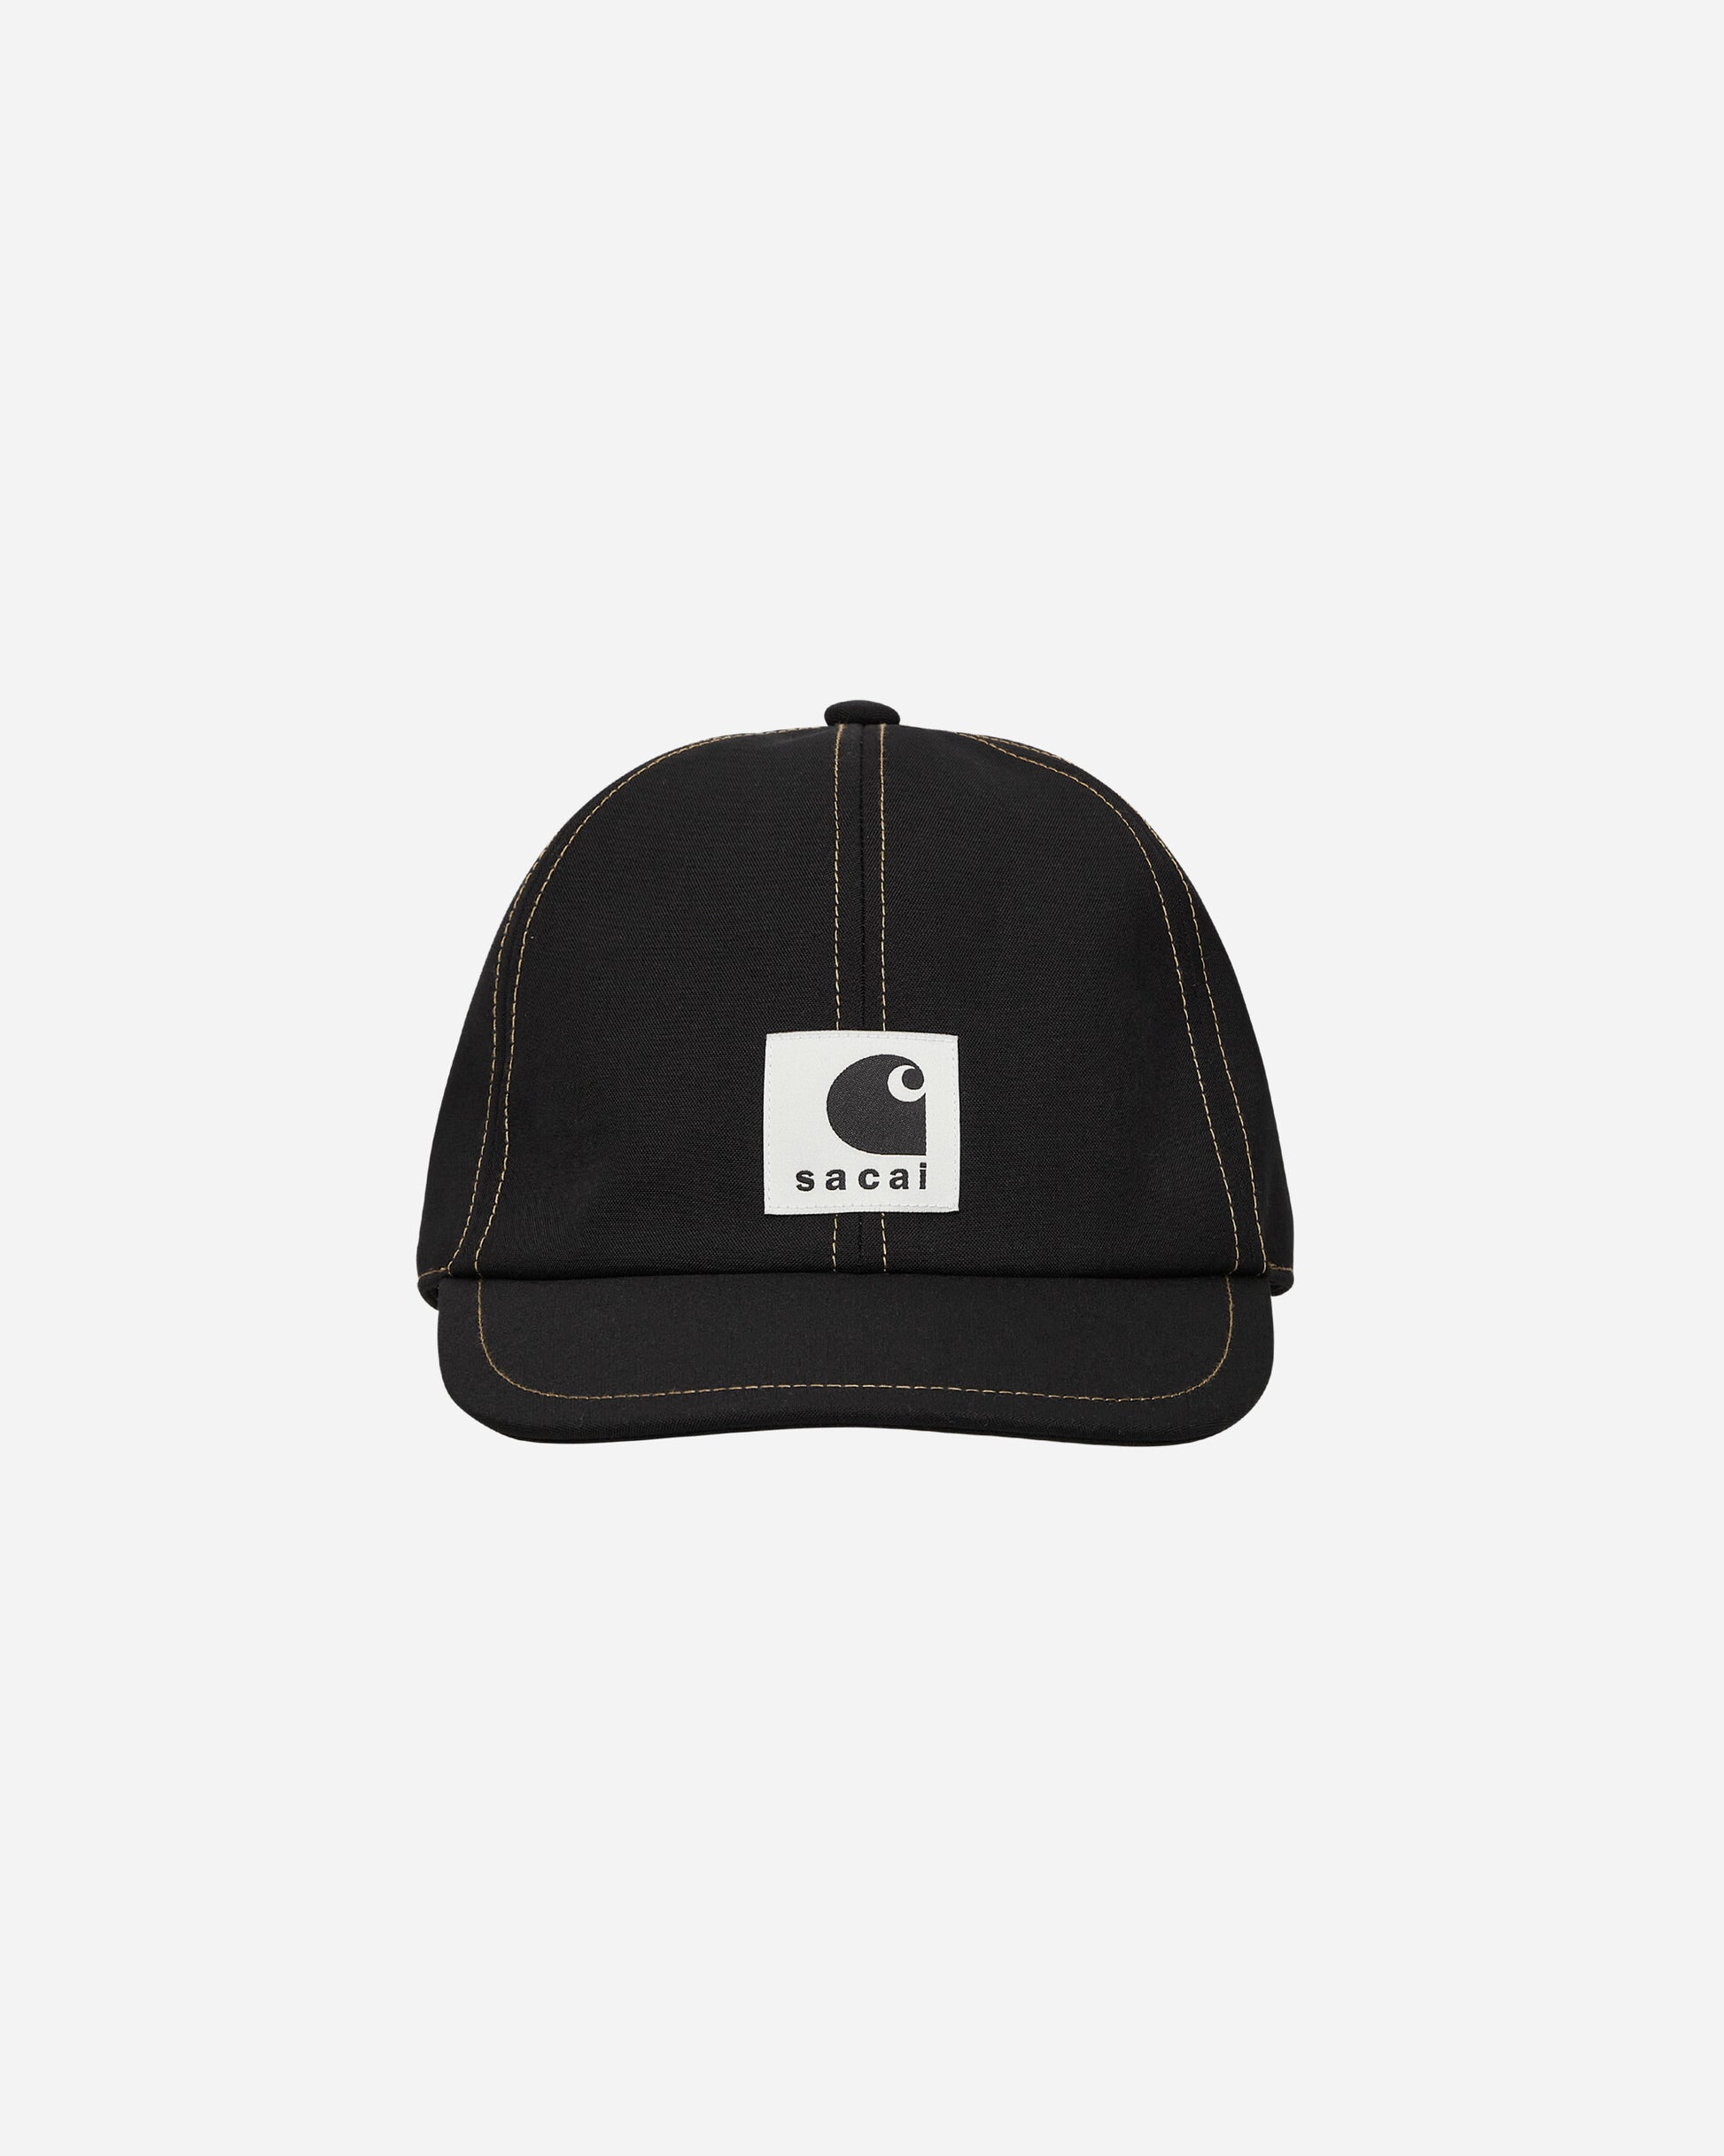 sacai Sacai X Carhartt Wip Suiting Bonding Cap Black Hats Caps 24-0727S 001